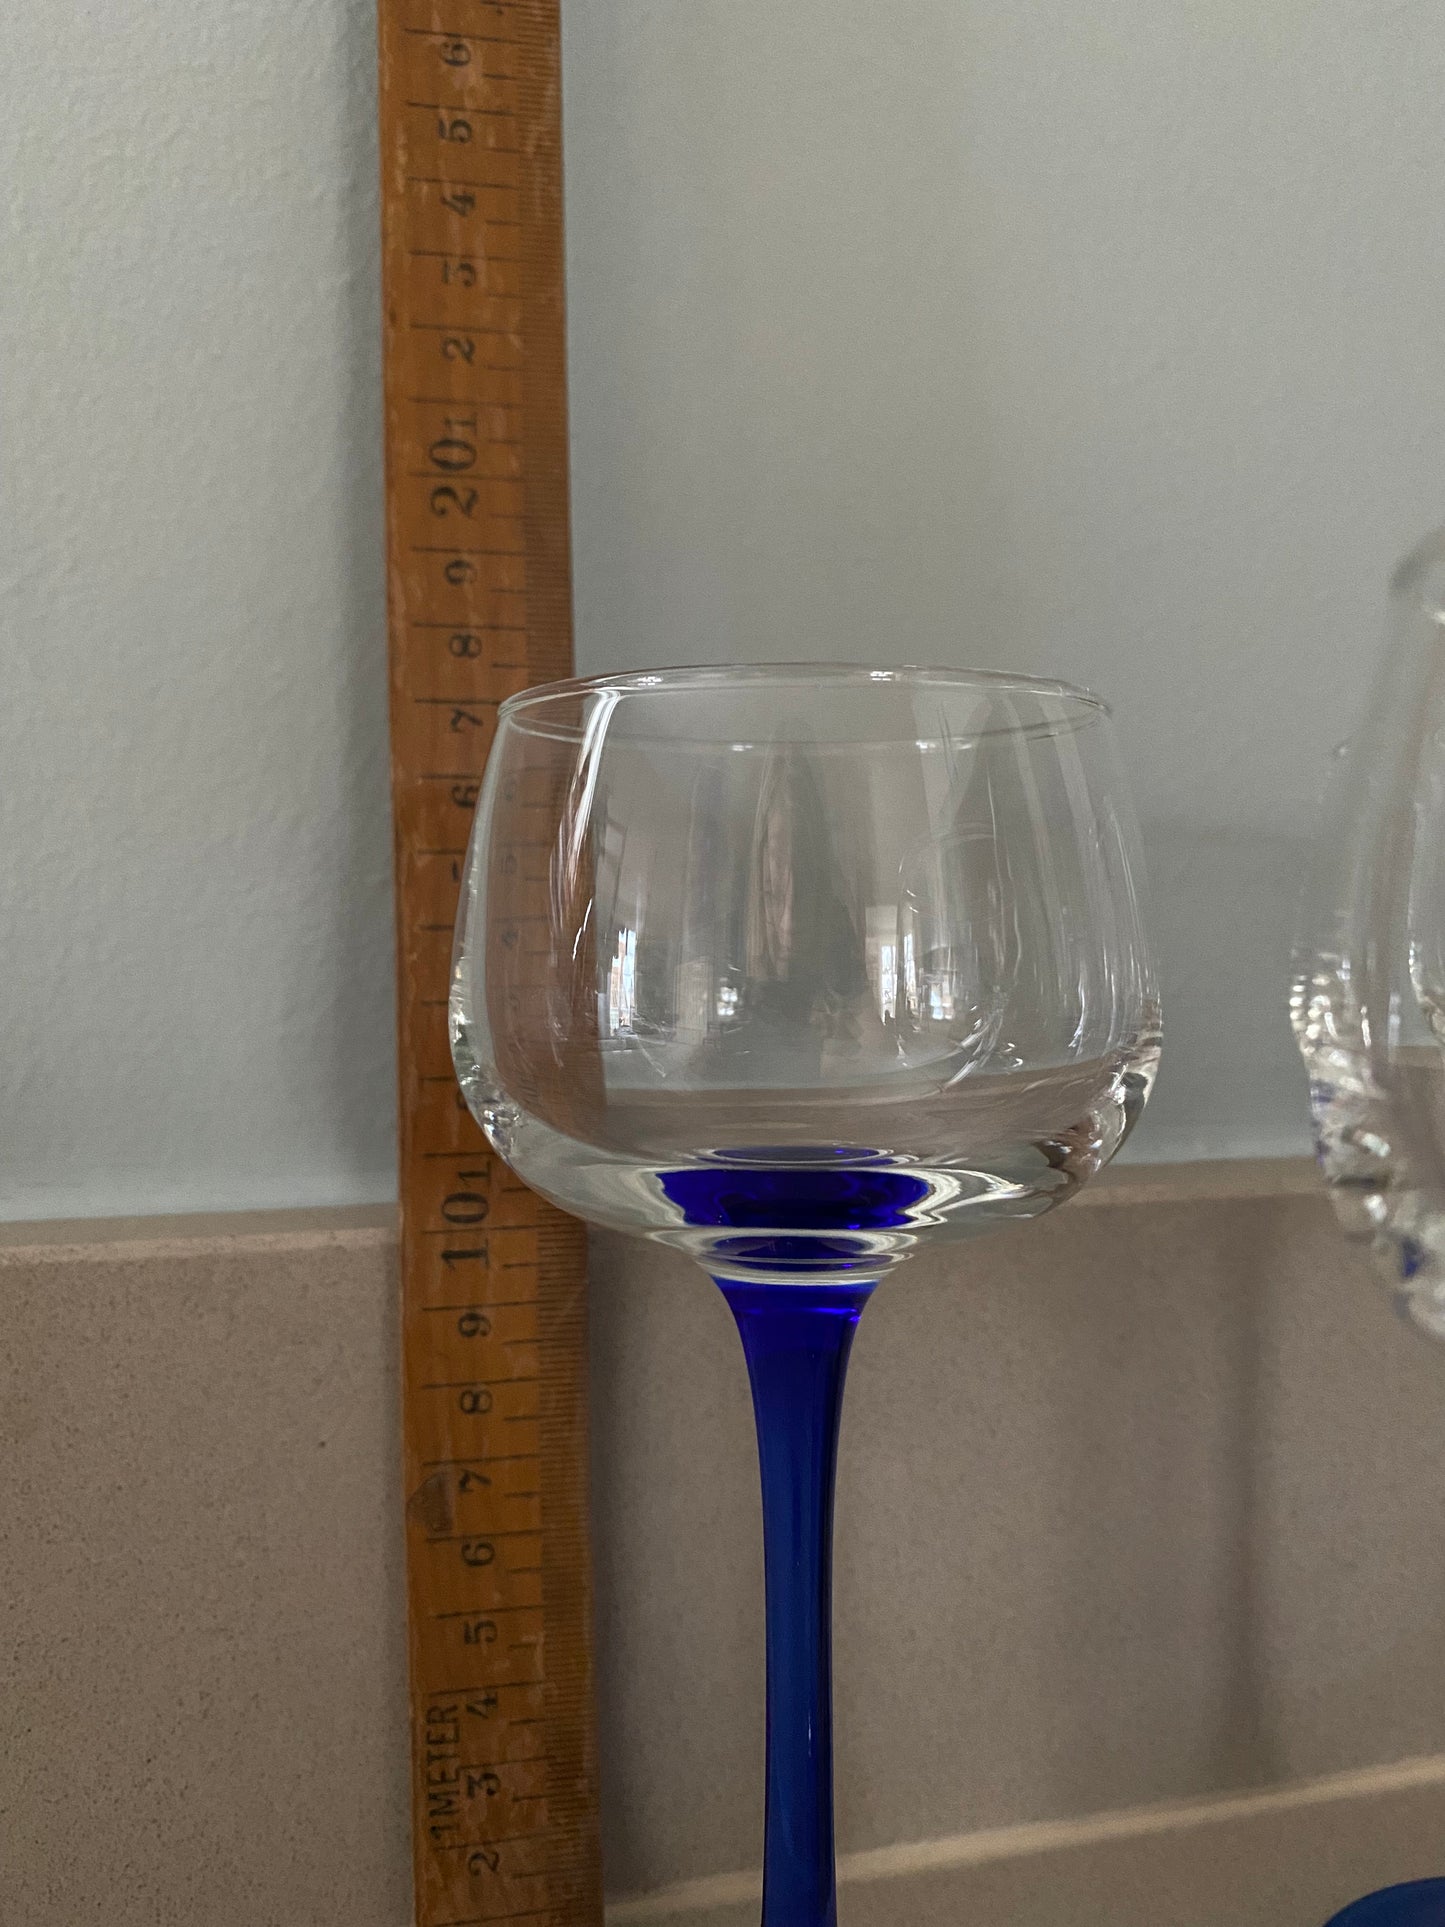 Set of six Luminarc vintage wine glasses